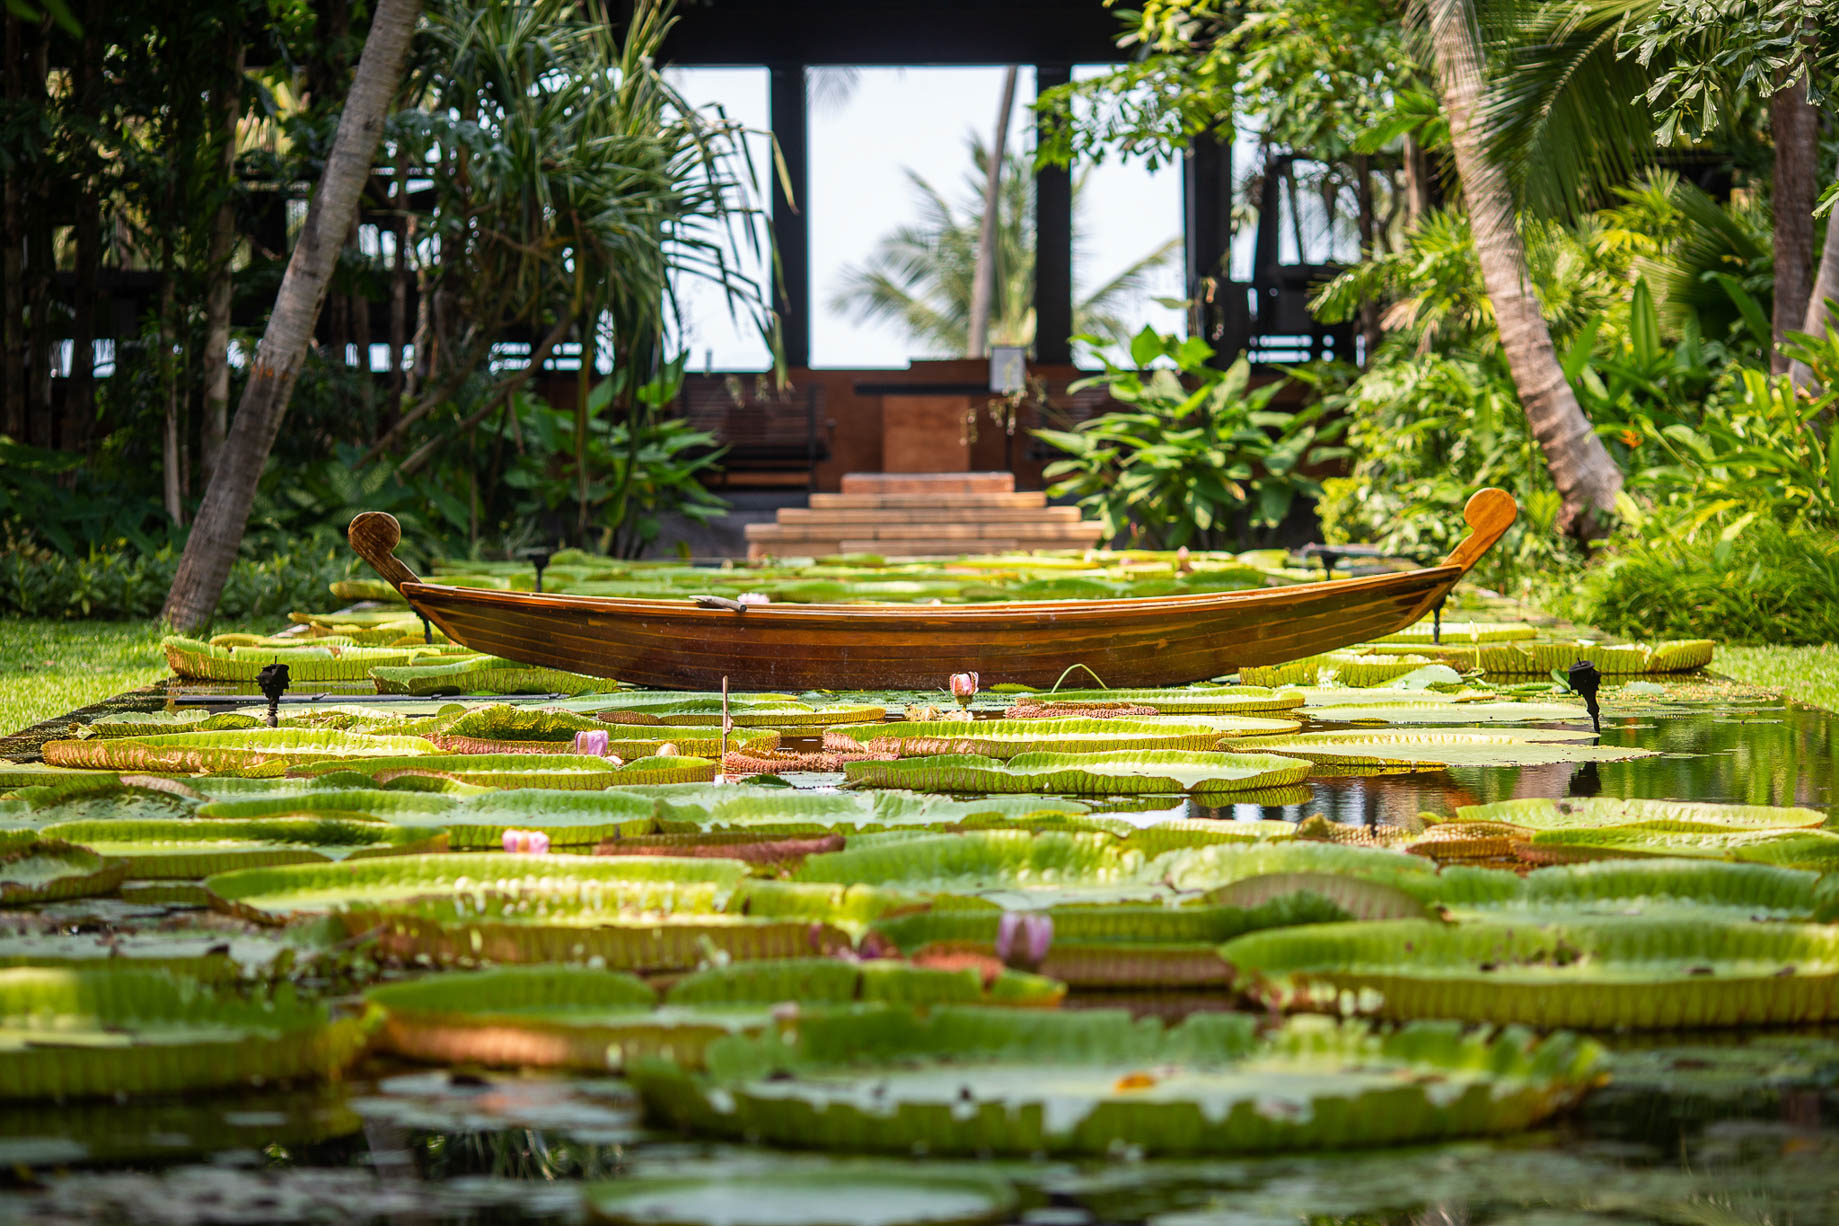 Anantara Bophut Koh Samui Resort - Thailand - Lotus Pond